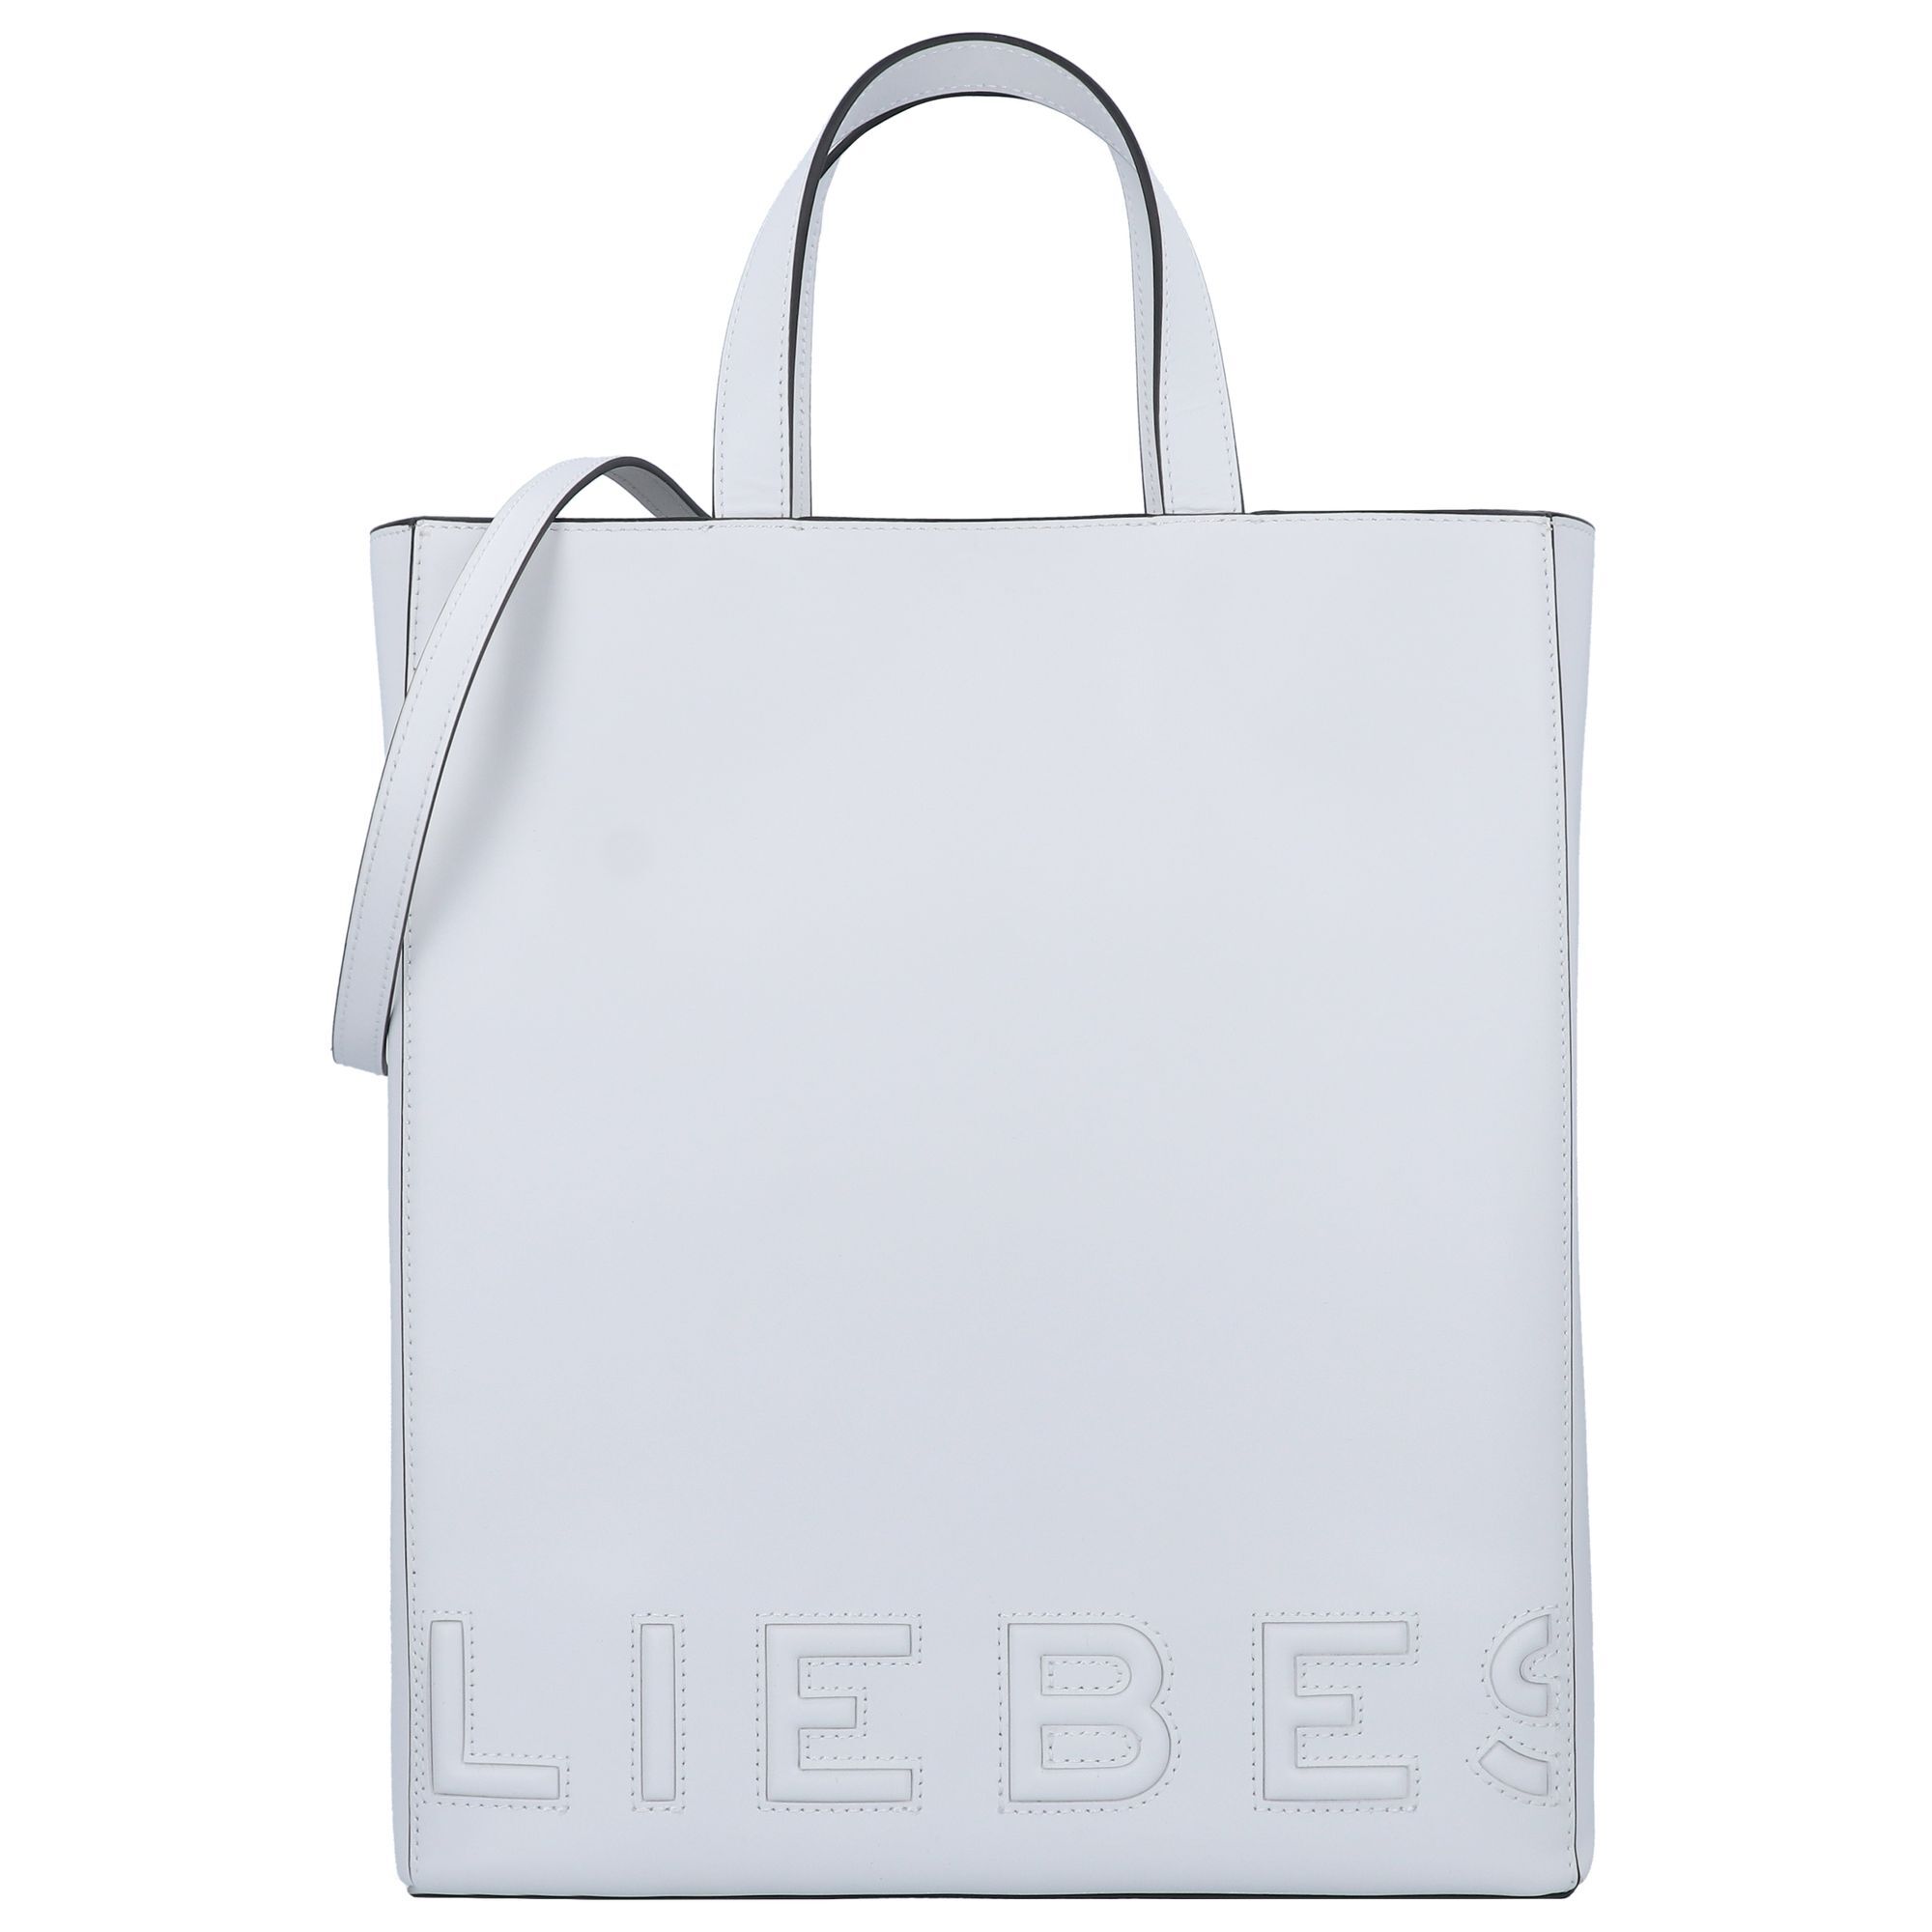 Сумка LIEBESKIND BERLIN Paper Bag Handtasche Leder 29 cm, белый